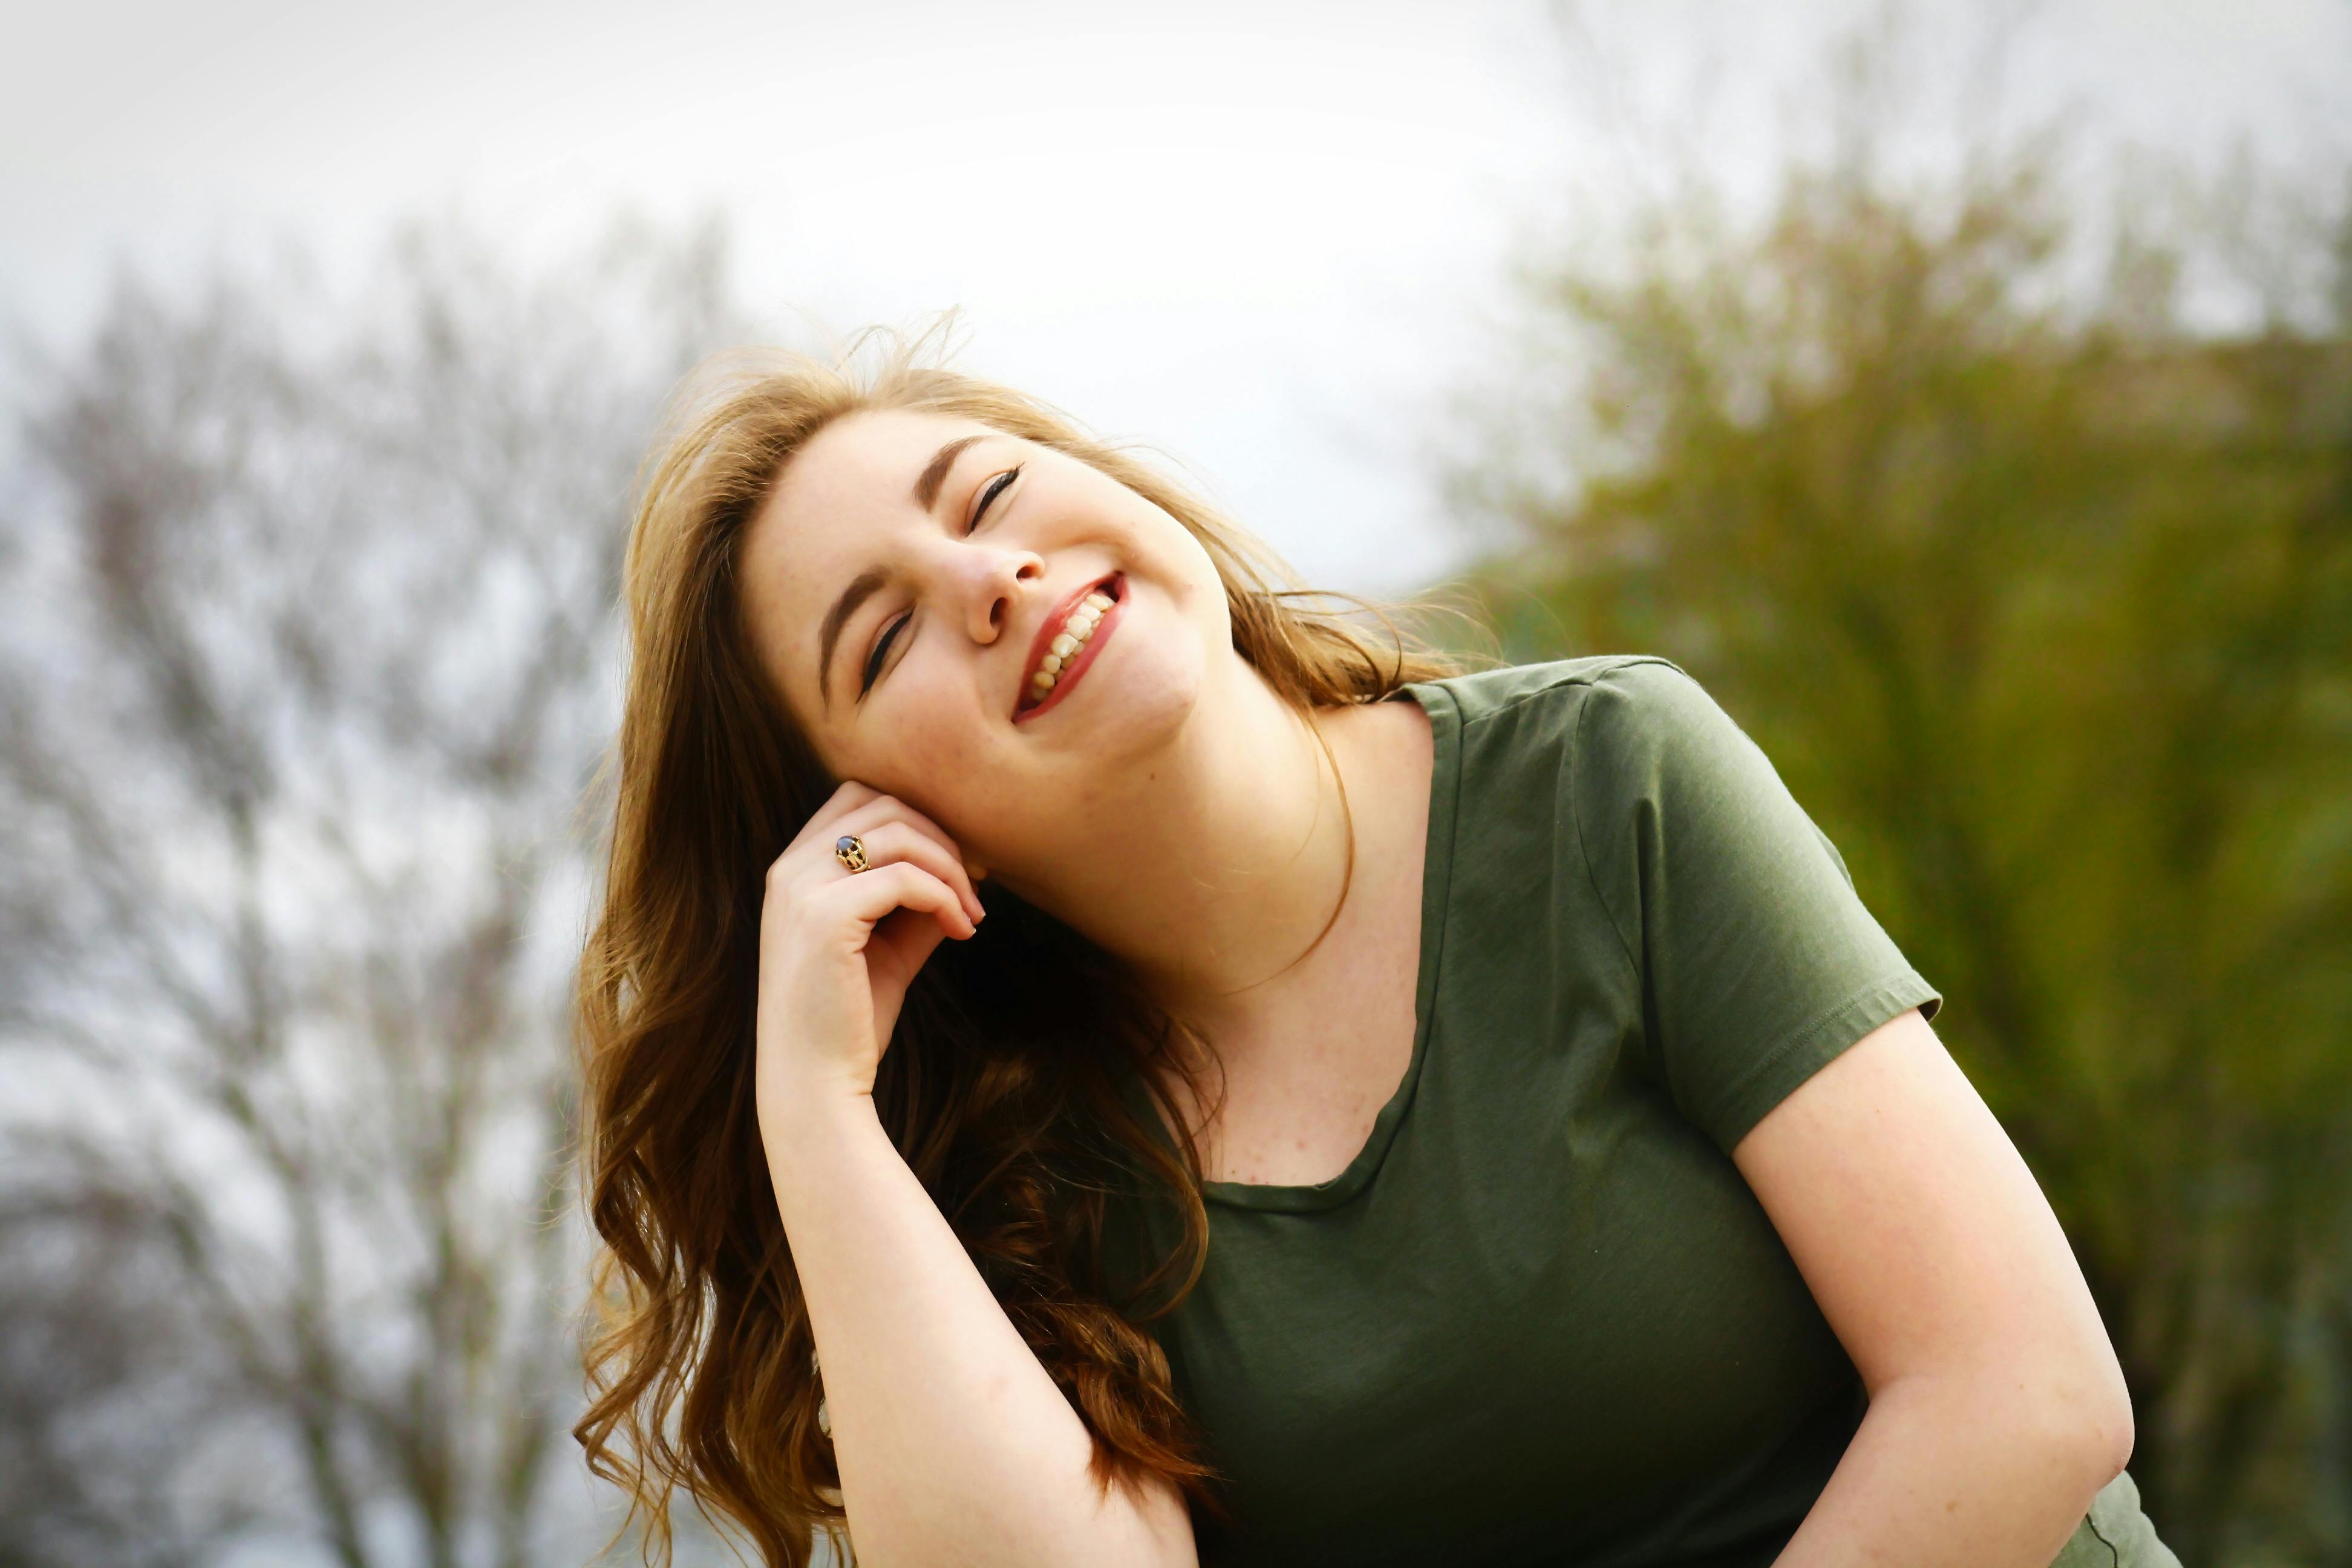 Une femme qui a l'air heureuse avec les yeux fermés alors qu'elle est à l'extérieur | Source : Pexels